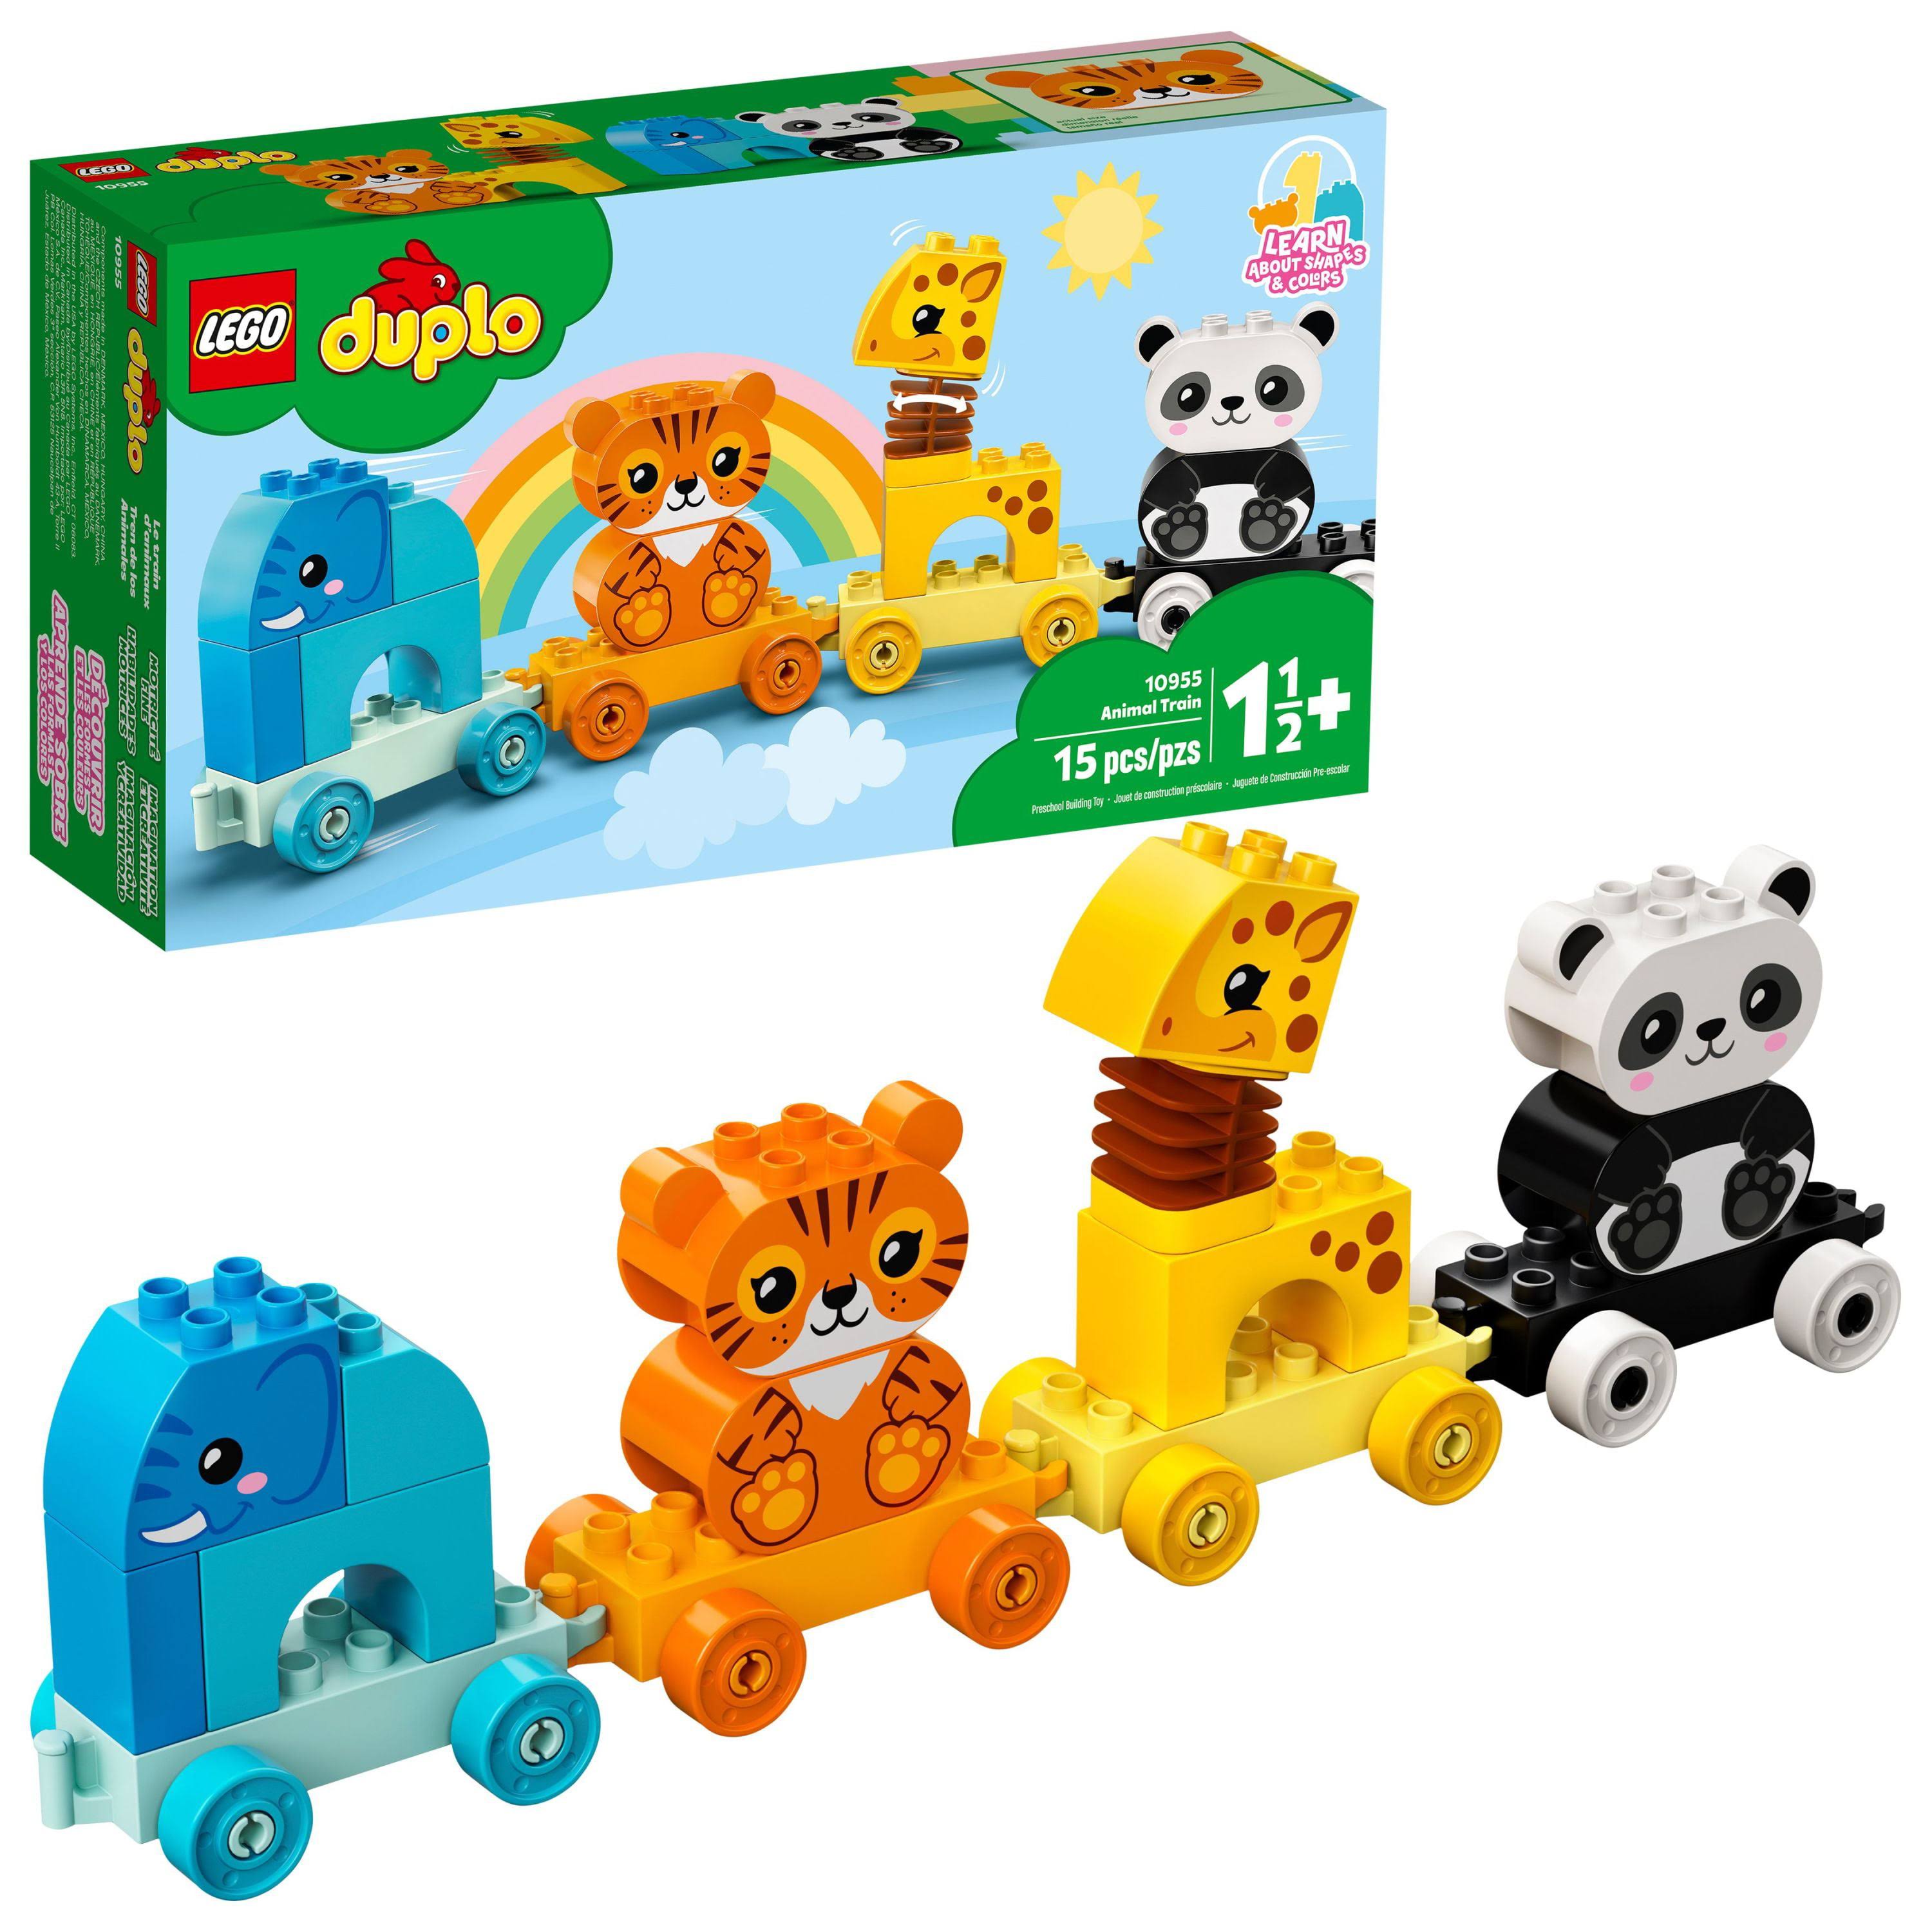 LEGO DUPLO My First Animal Train - 10955